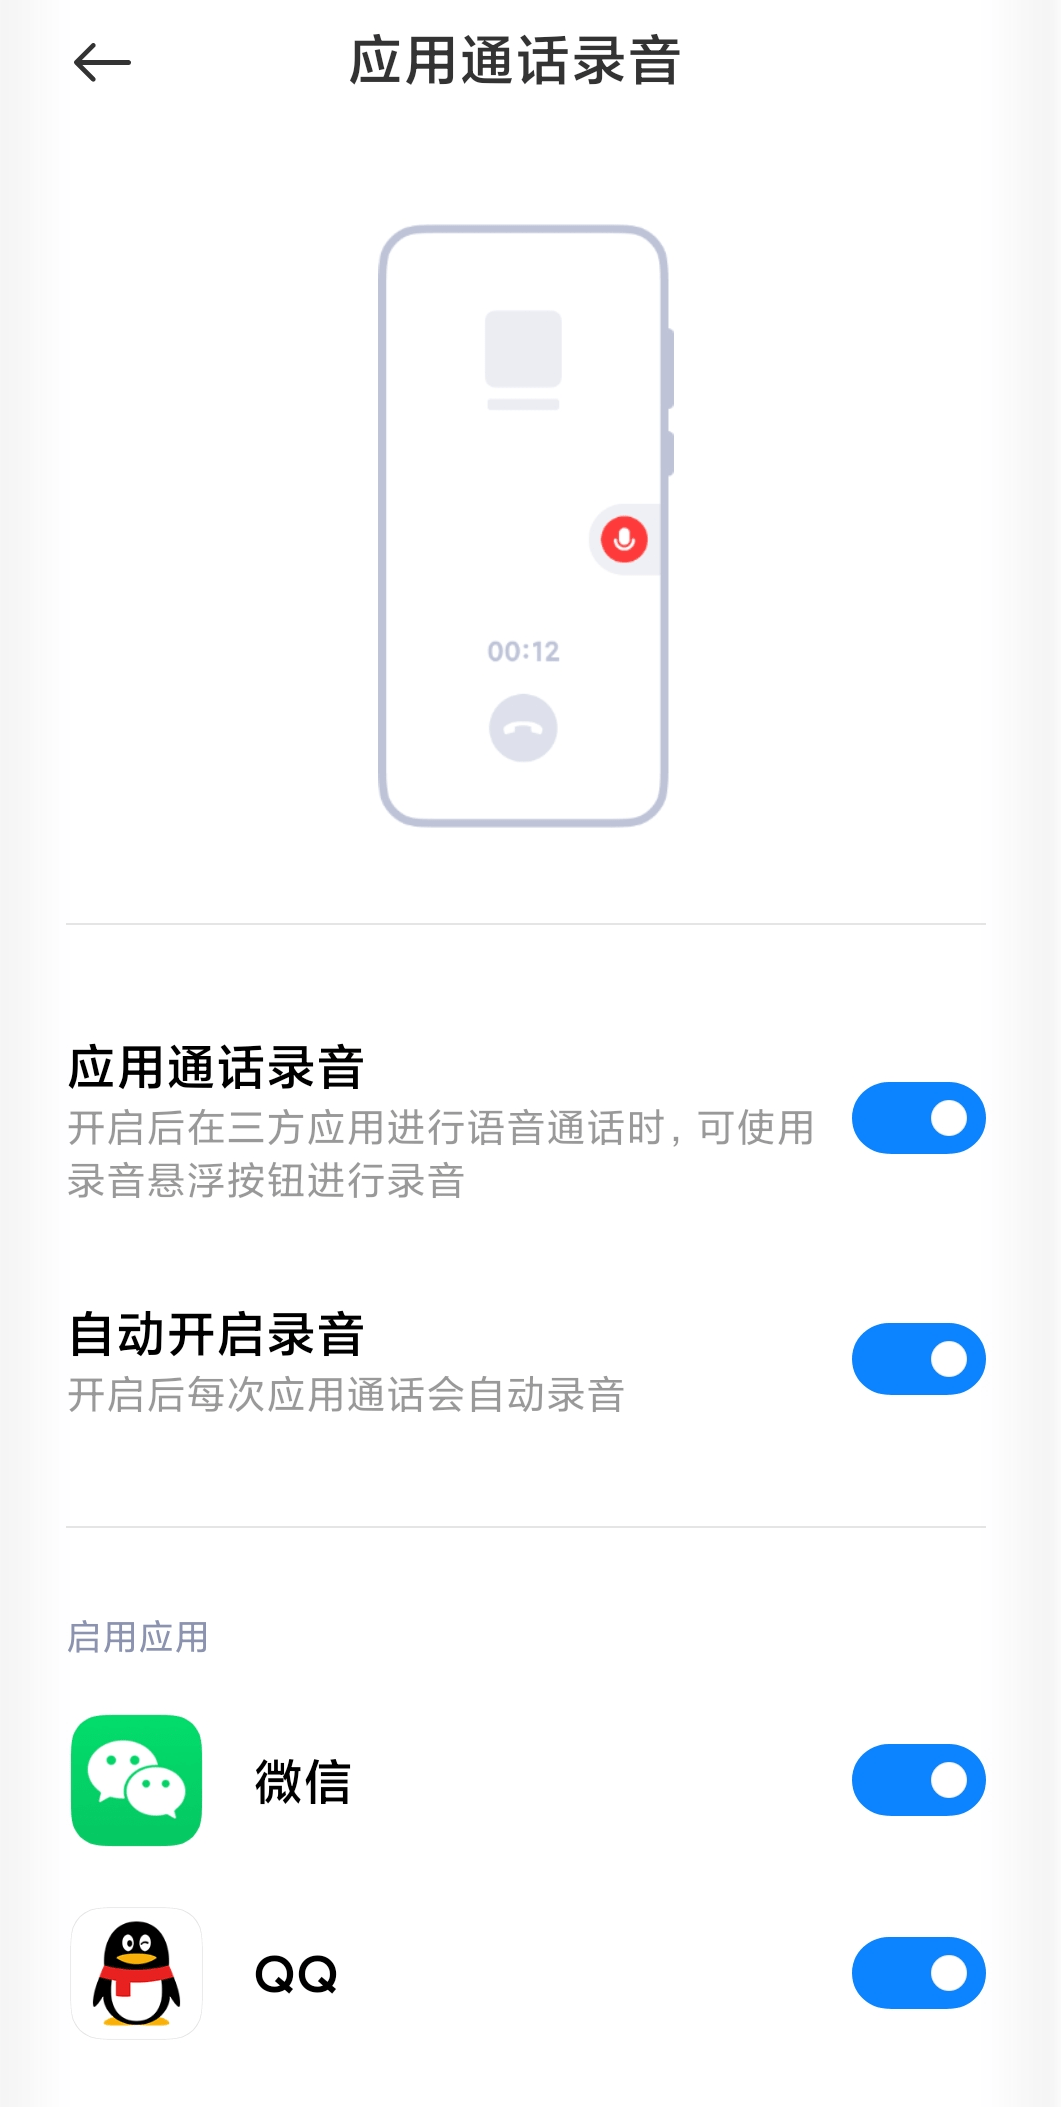 手机|张国全回应部分小米手机不显示QQ通话录音悬浮按钮